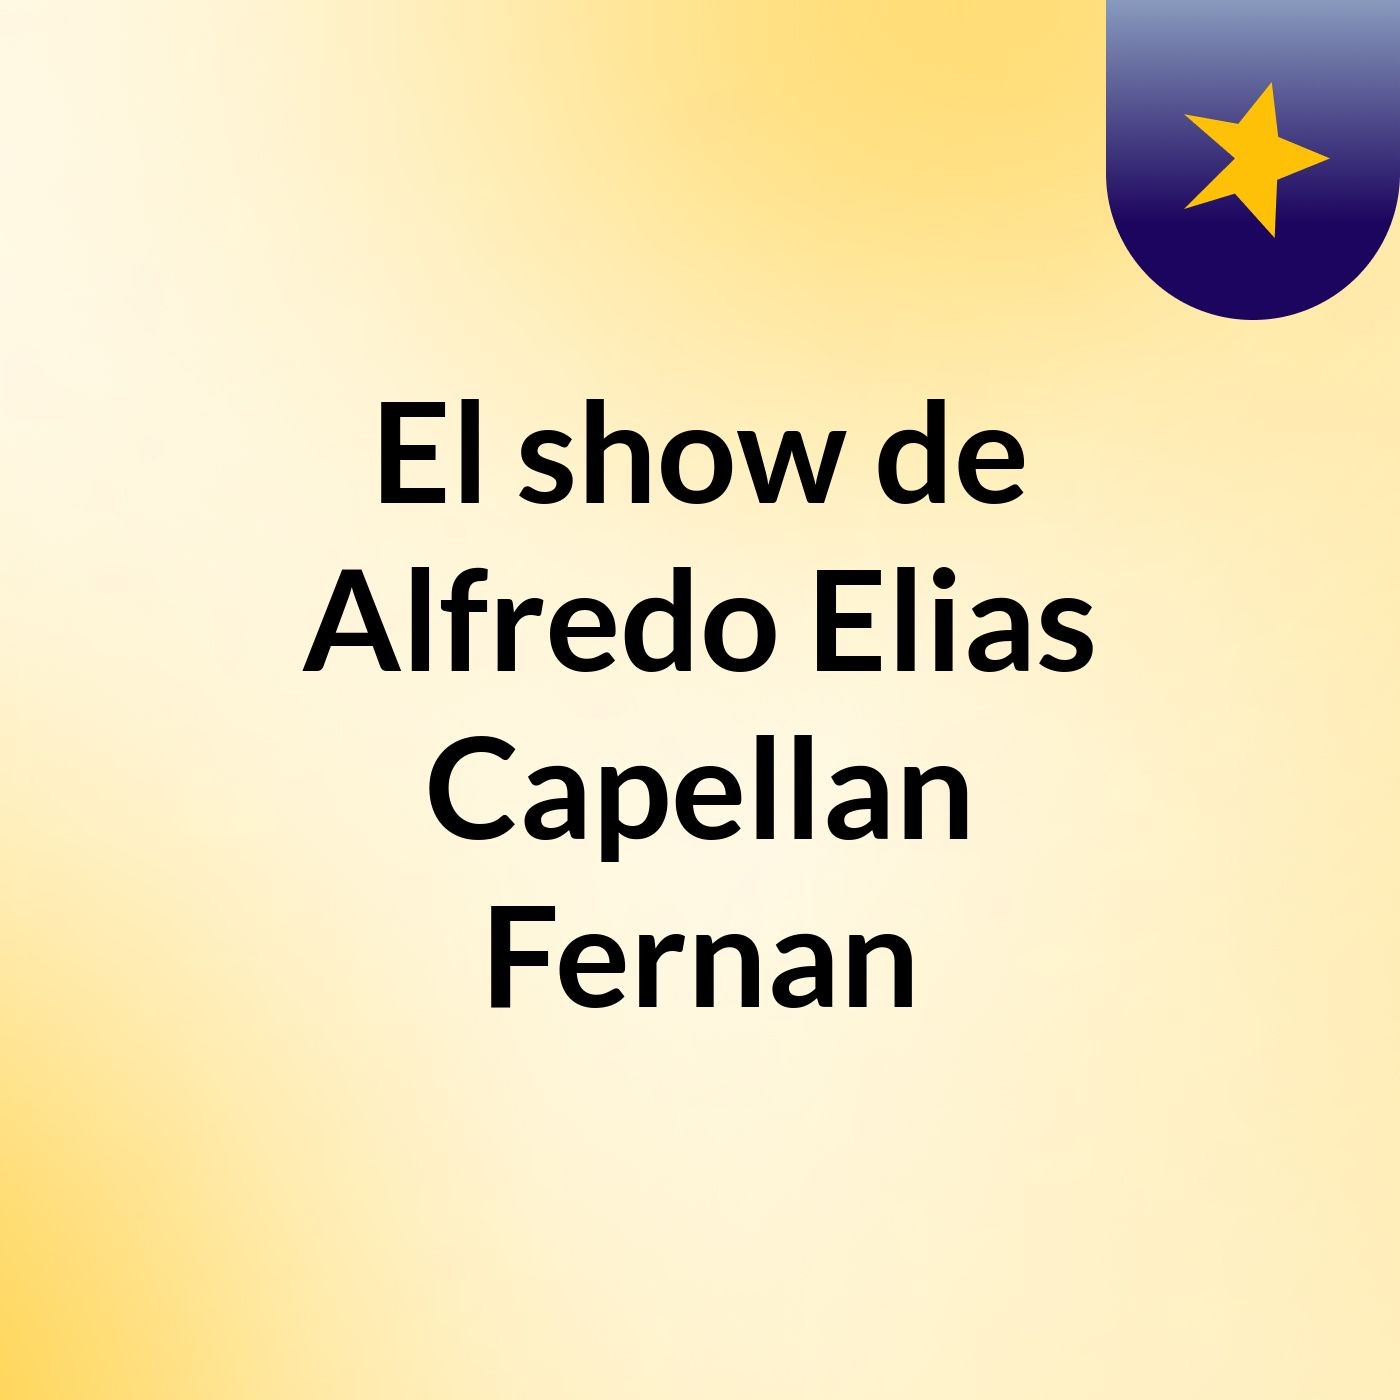 El show de Alfredo Elias Capellan Fernan